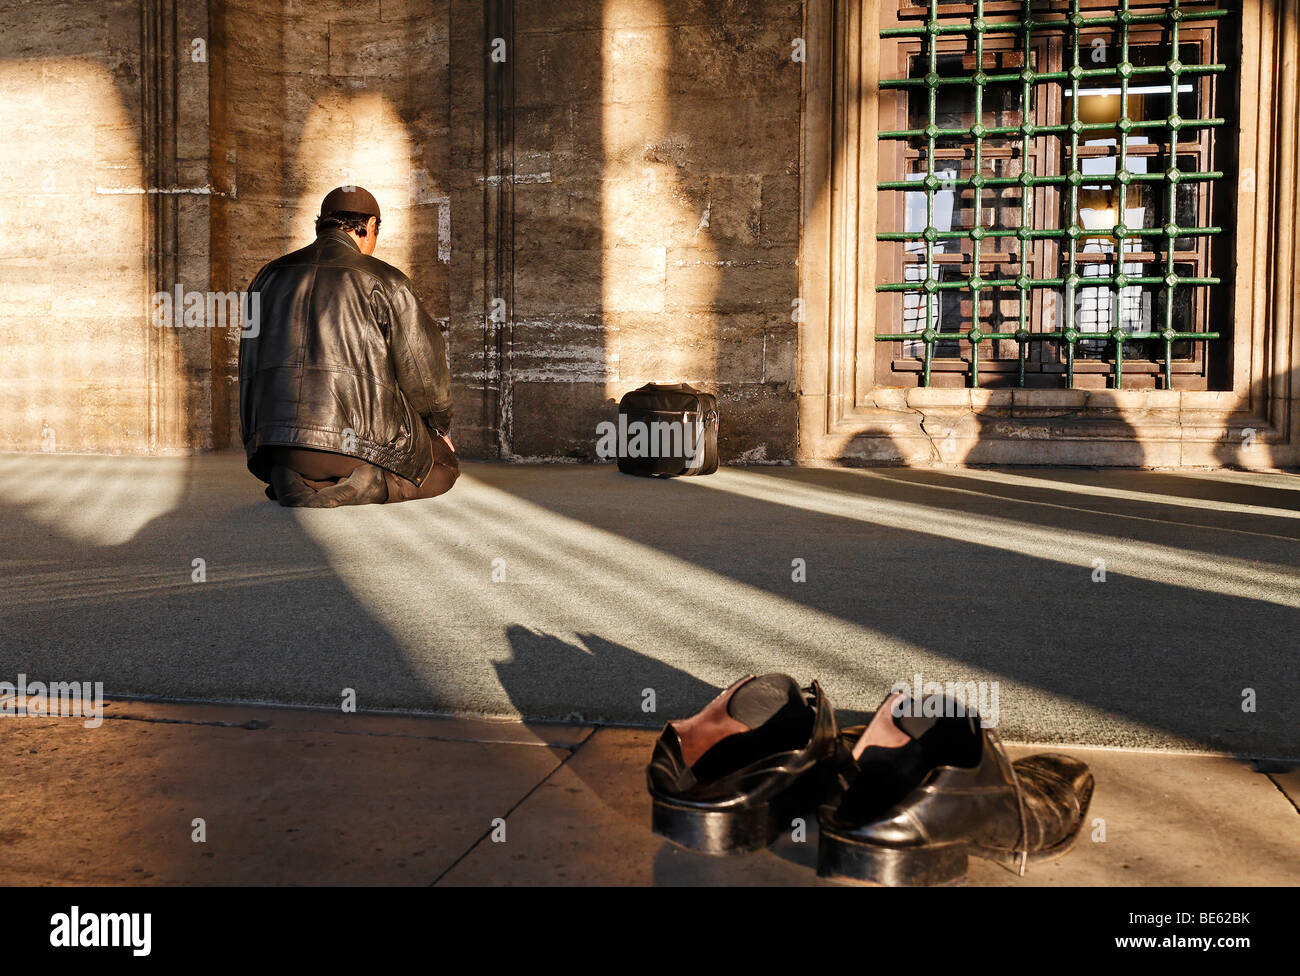 Hombre musulmán orando delante de un nicho de oración, zapatos quitados, Iskele, la Mezquita del Sultán, Ueskuedar Mirimah, Estambul, Turquía Foto de stock